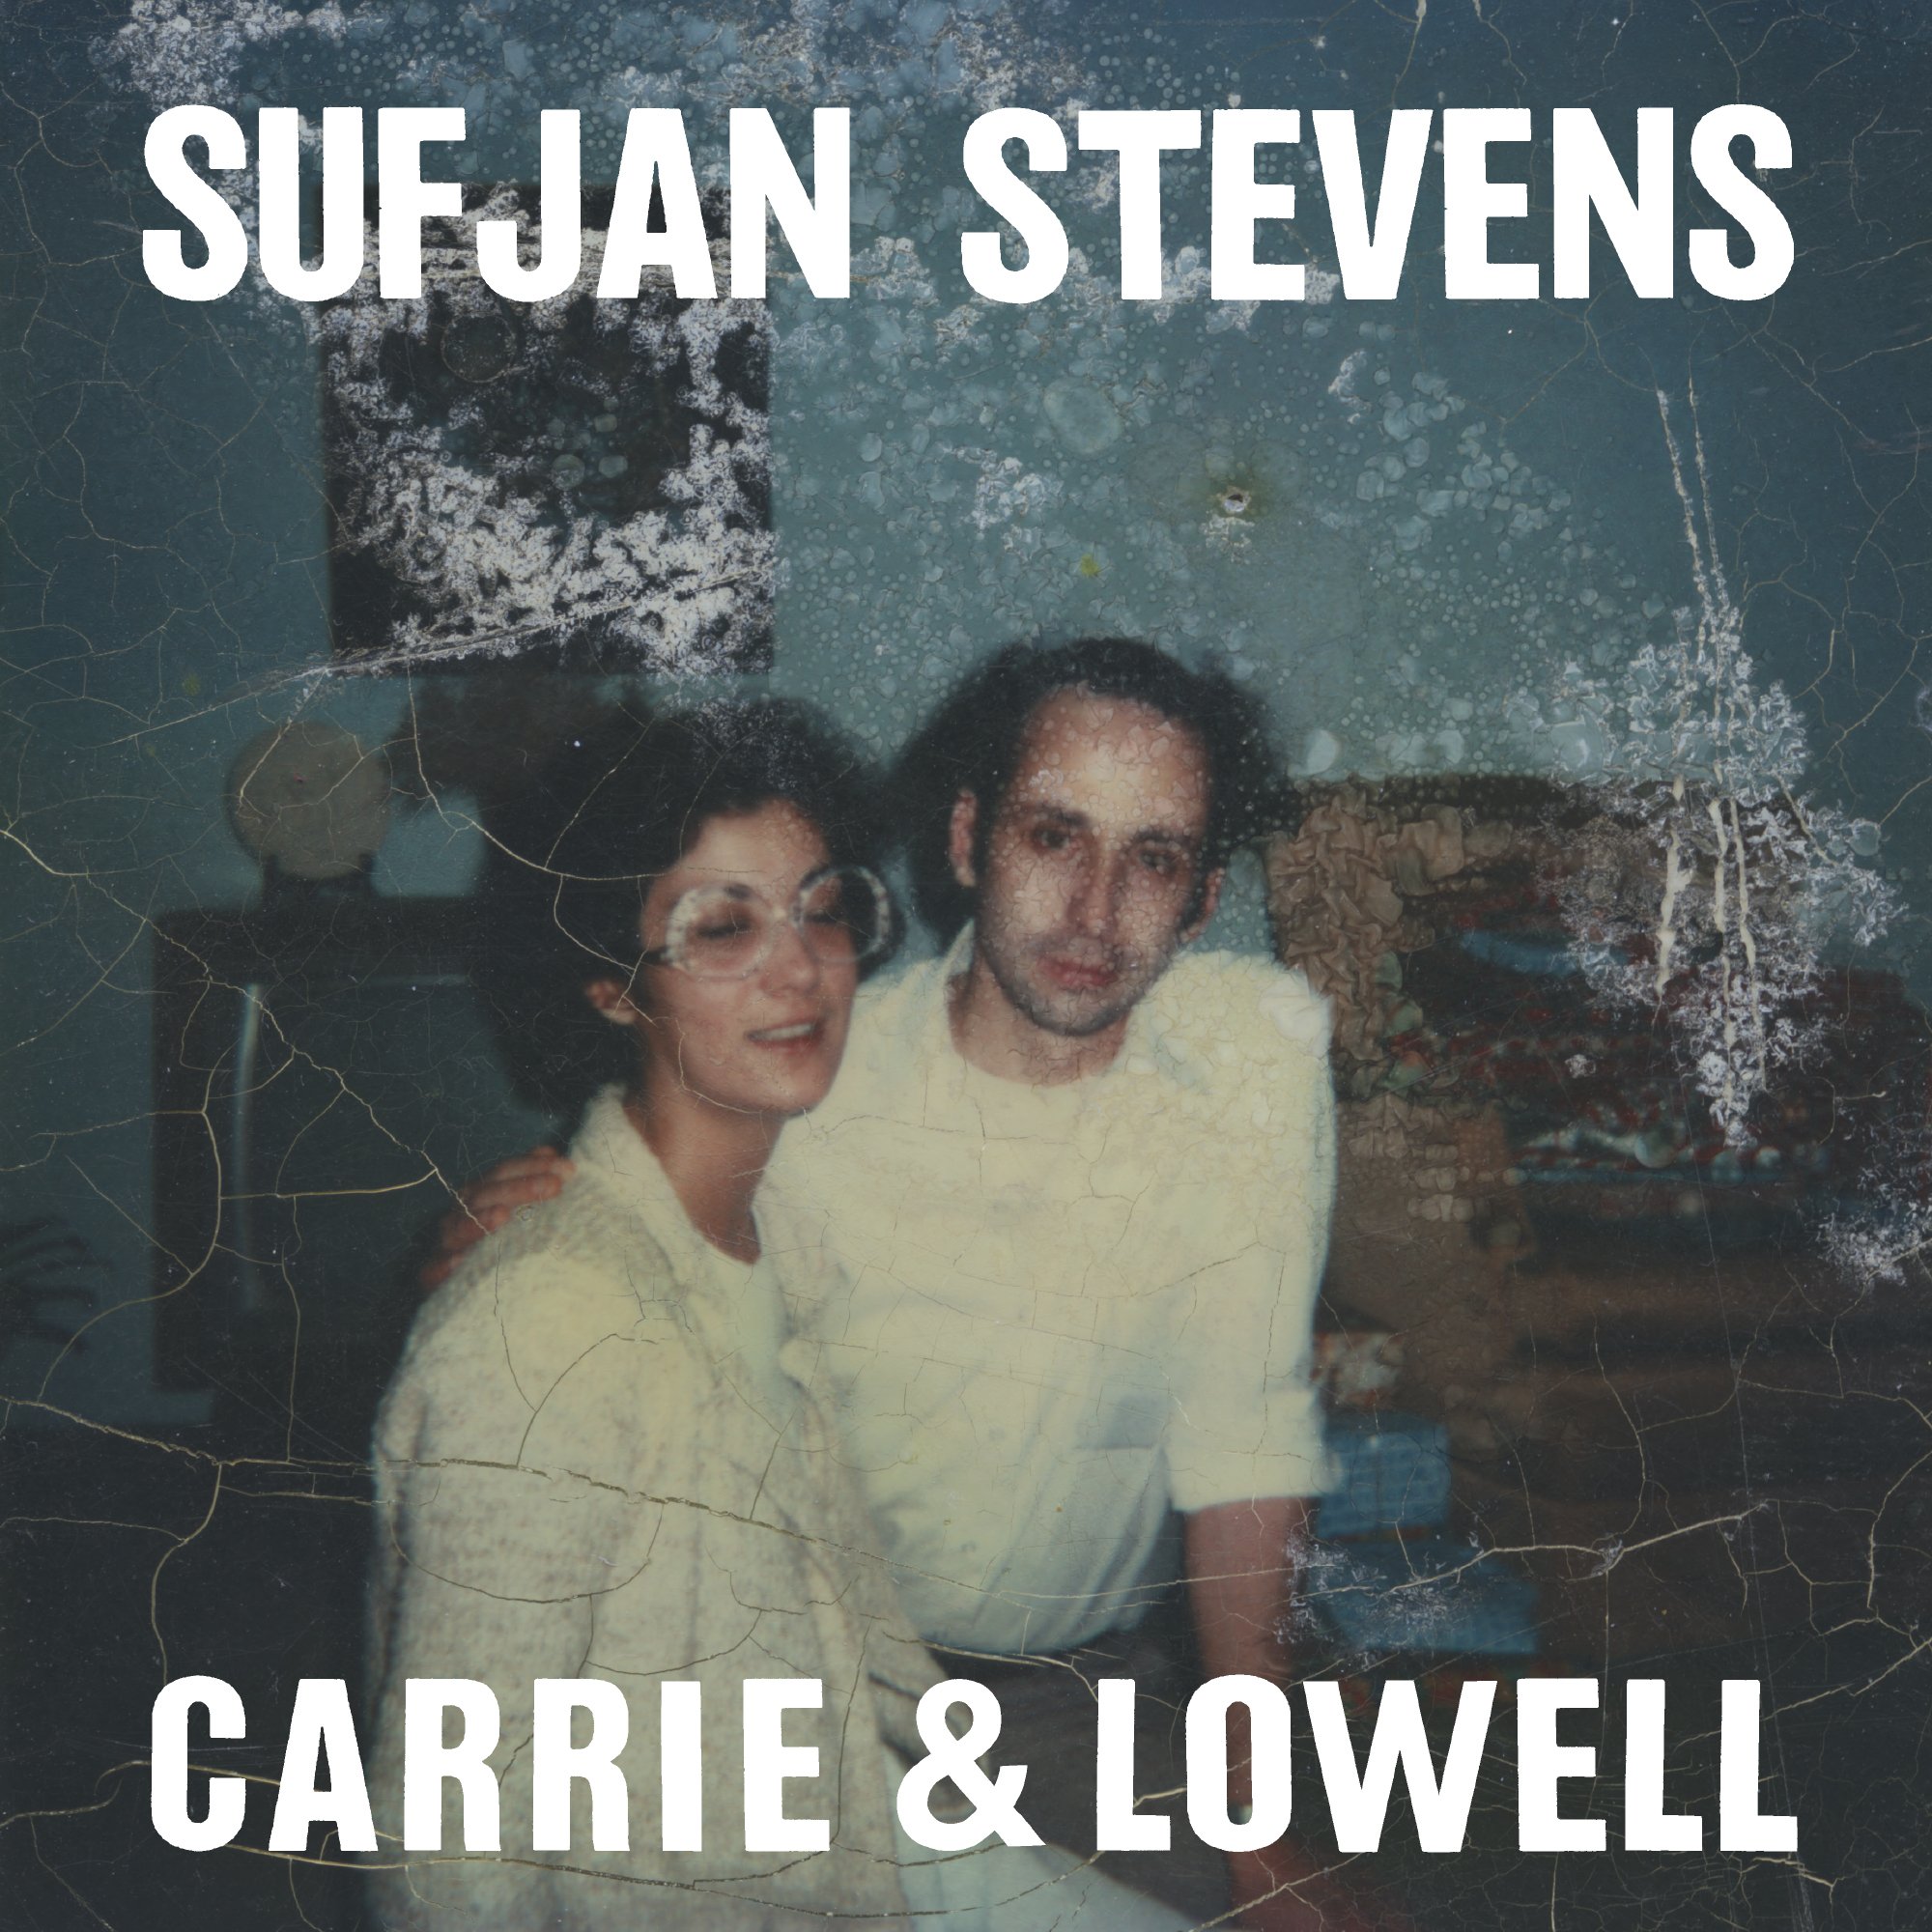 sufjan-stevens-carrie-lowell